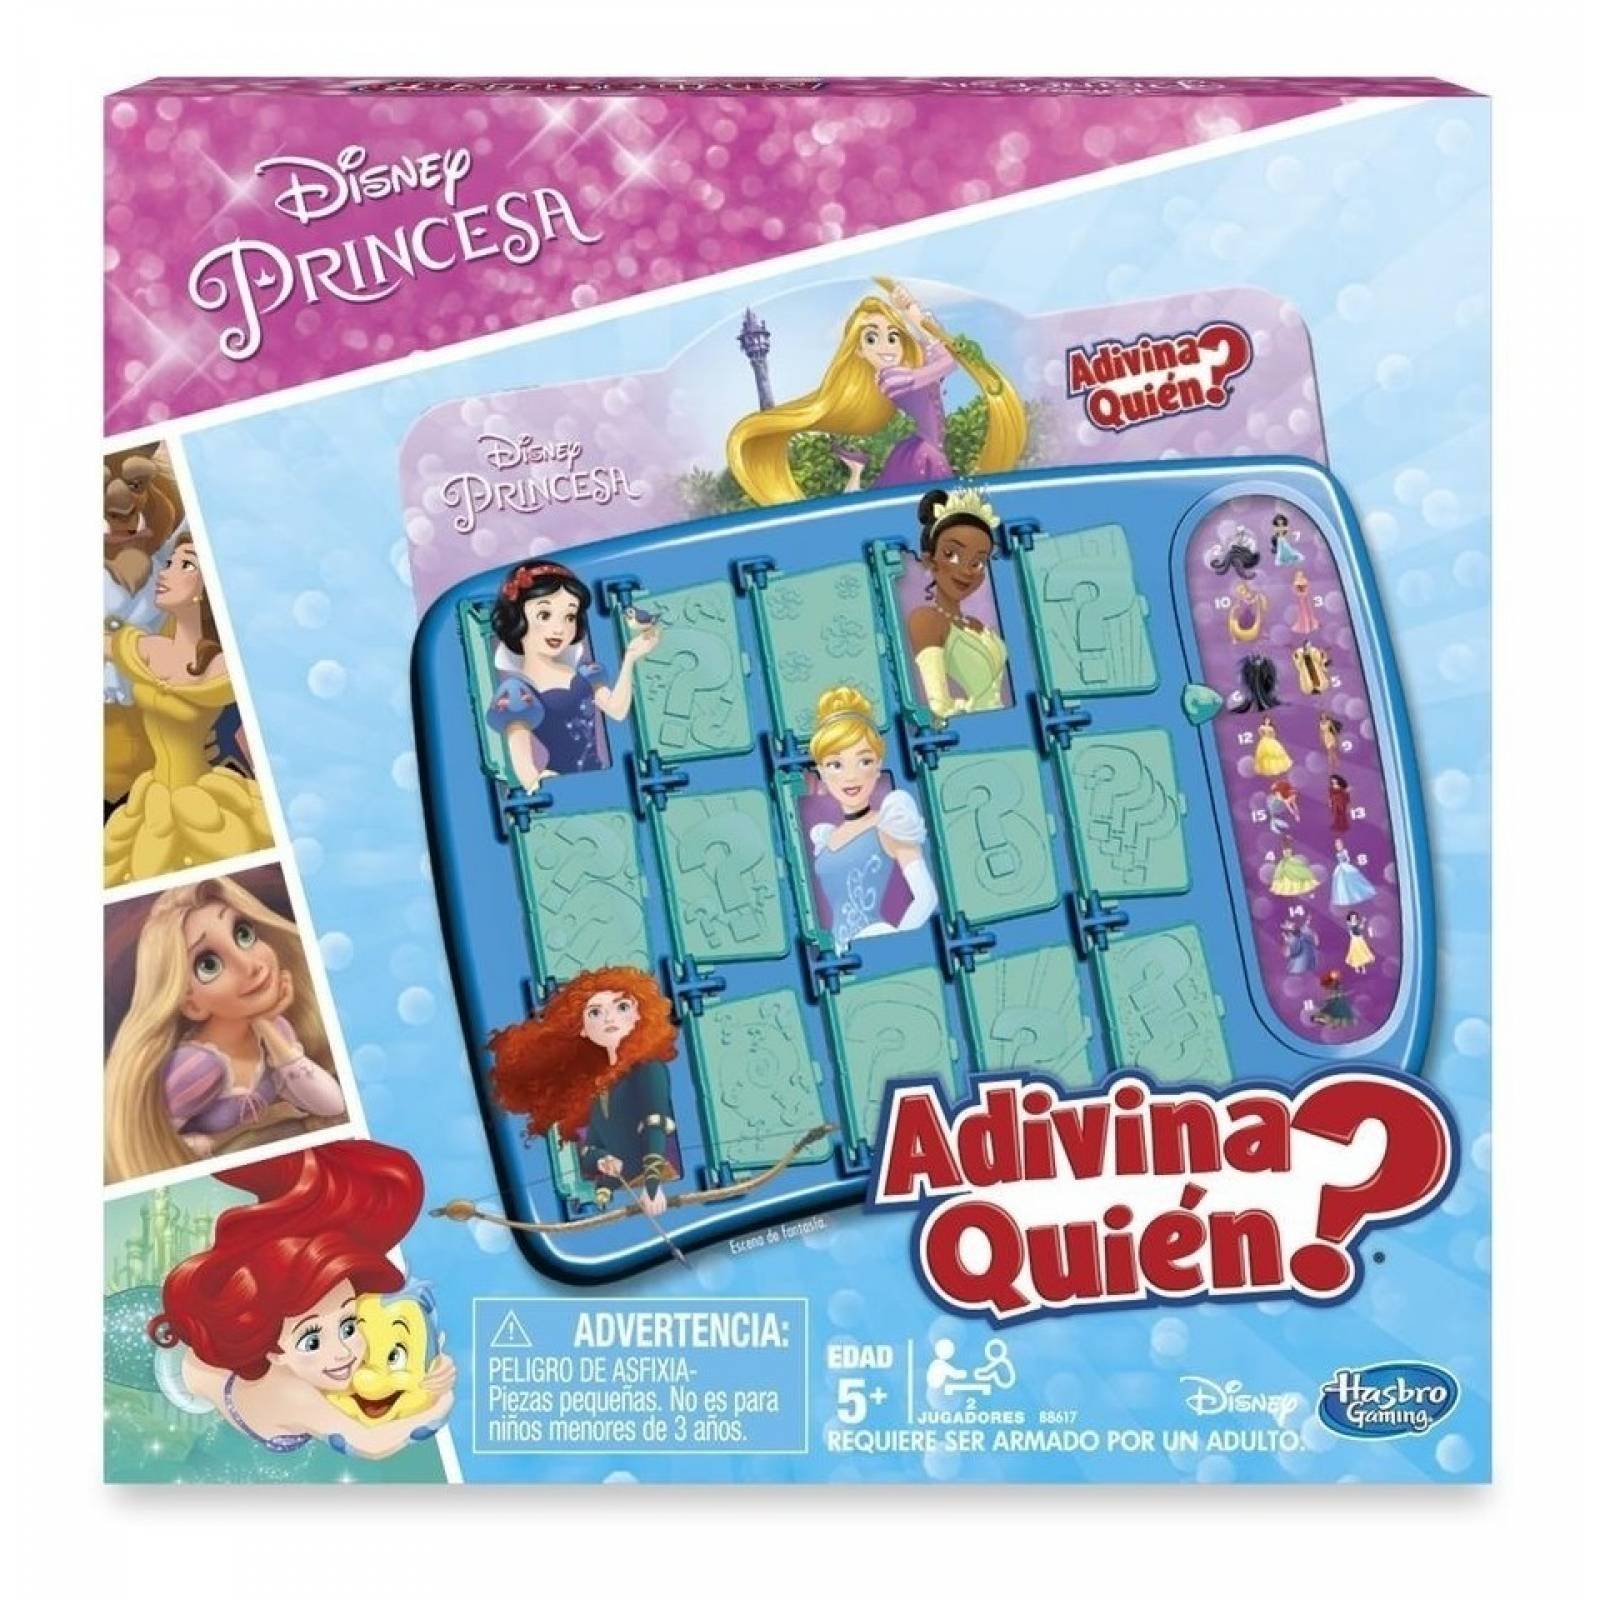 Juego De Mesa Adivina Quien Disney Princesas Juegos de mesa que estimulan la memoria y concentración del niño. juego de mesa adivina quien disney princesas